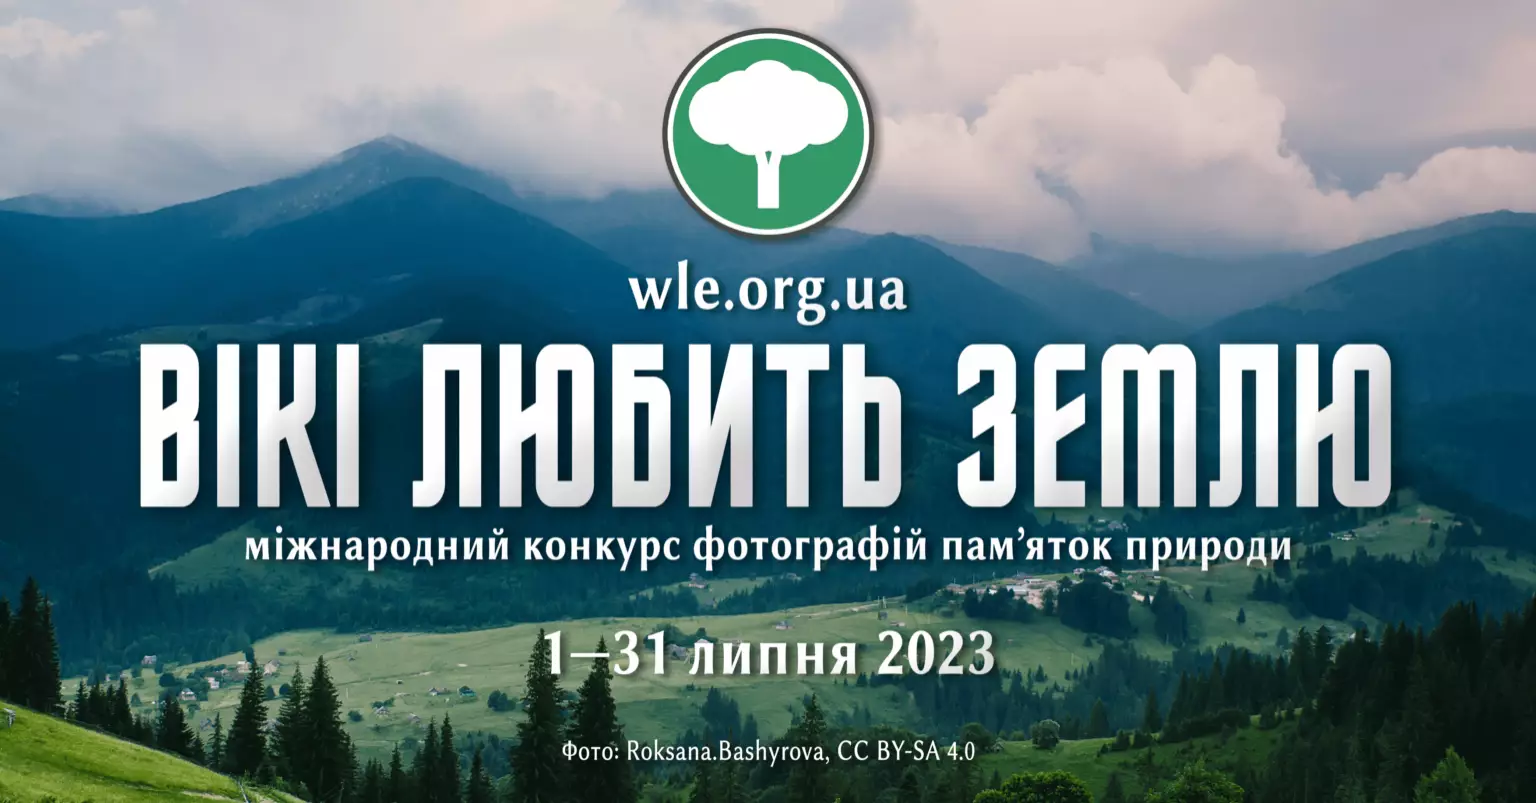 «Вікімедіа Україна» запрошує до участі в десятому фотоконкурсі «Вікі любить Землю»